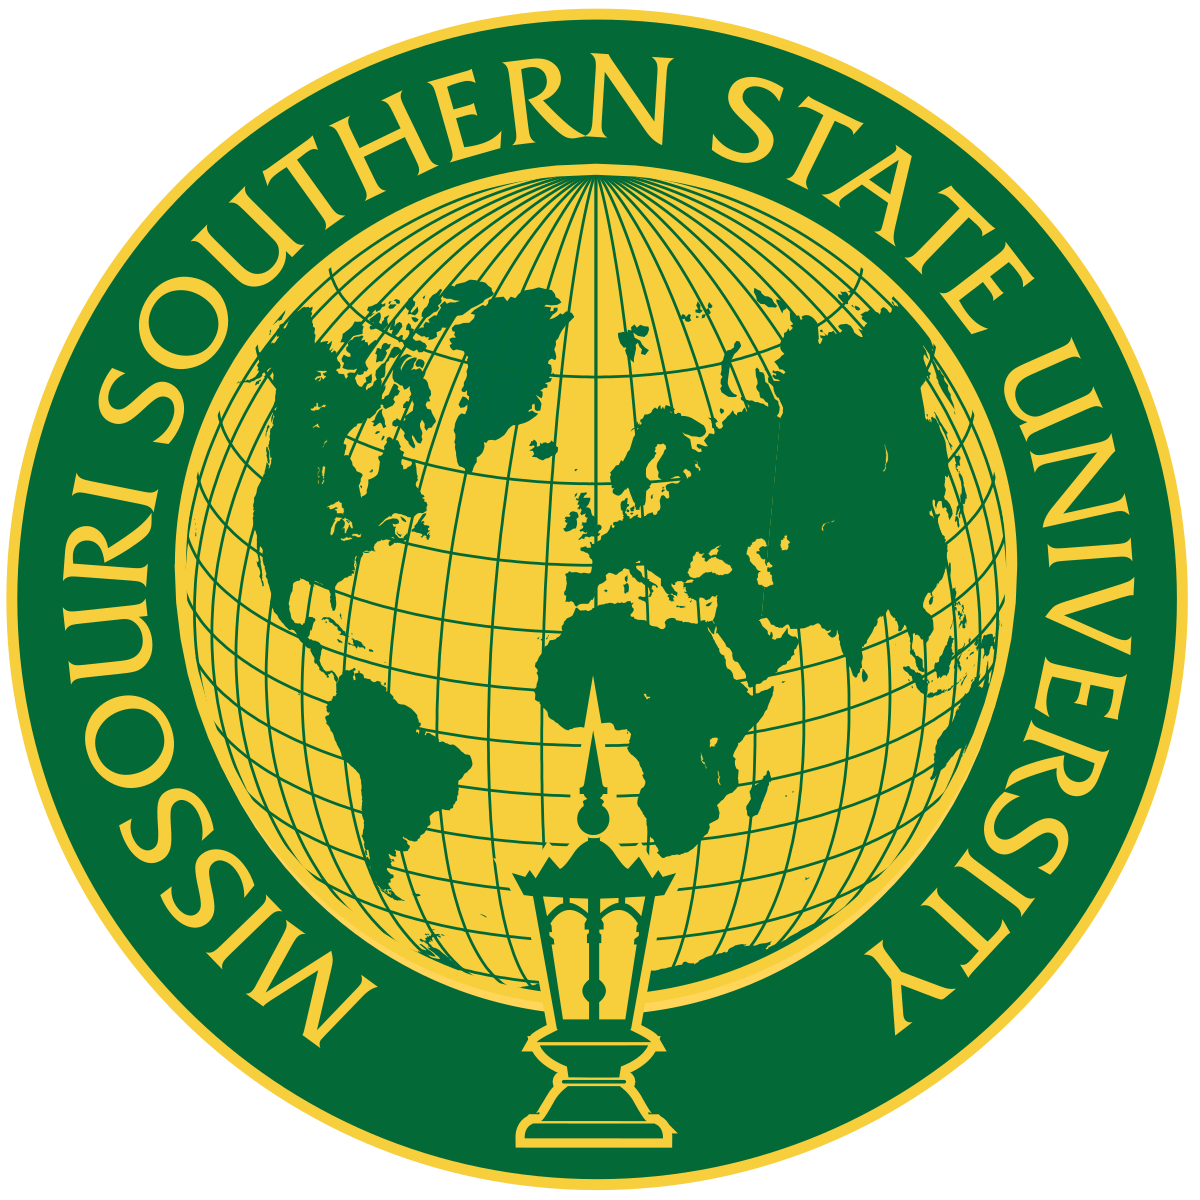 Southern Missouri State University